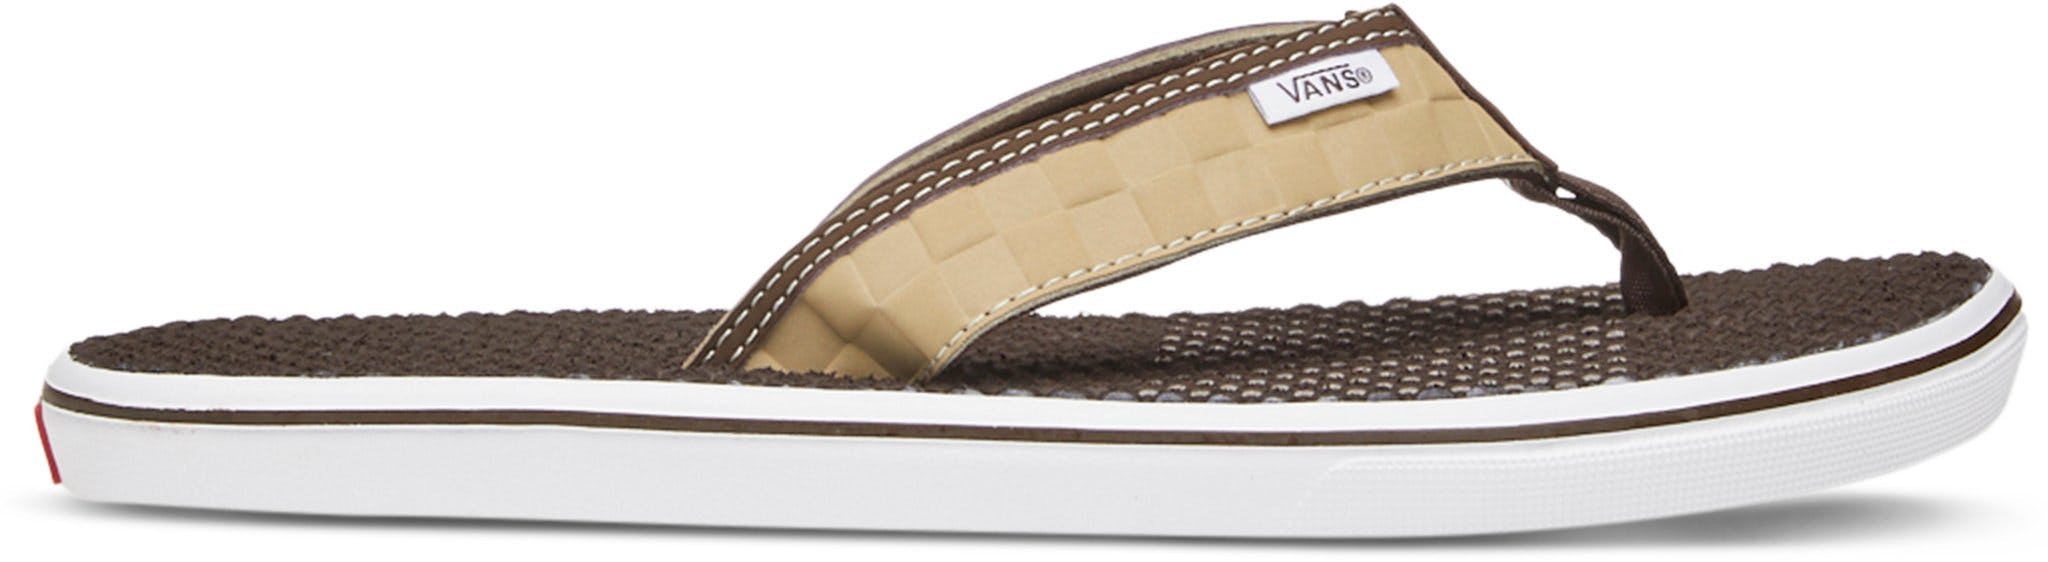 Product image for La Costa Lite Sandals - Men's